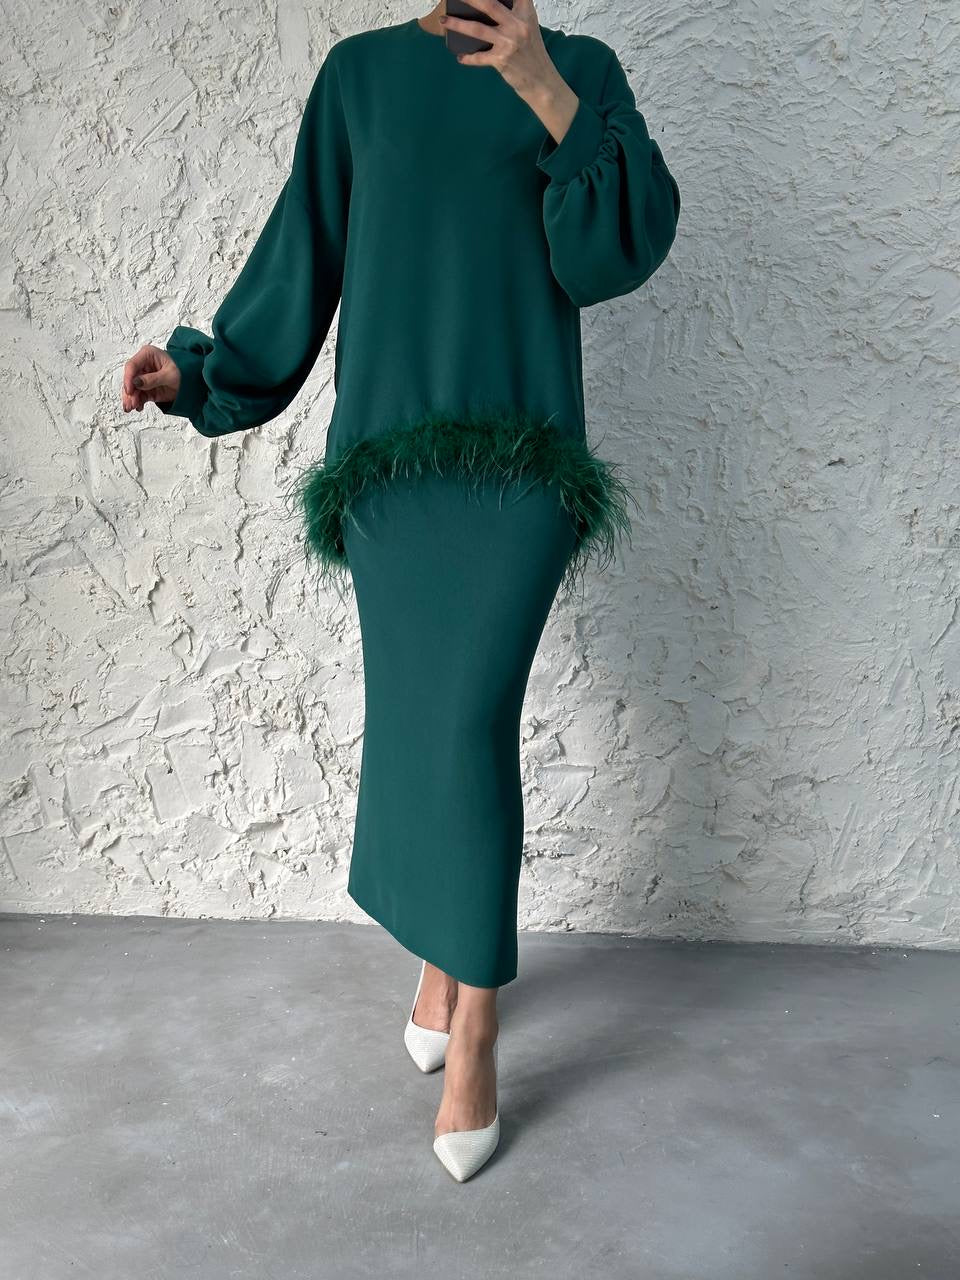 Layna Skirt 2 Piece Set - Green